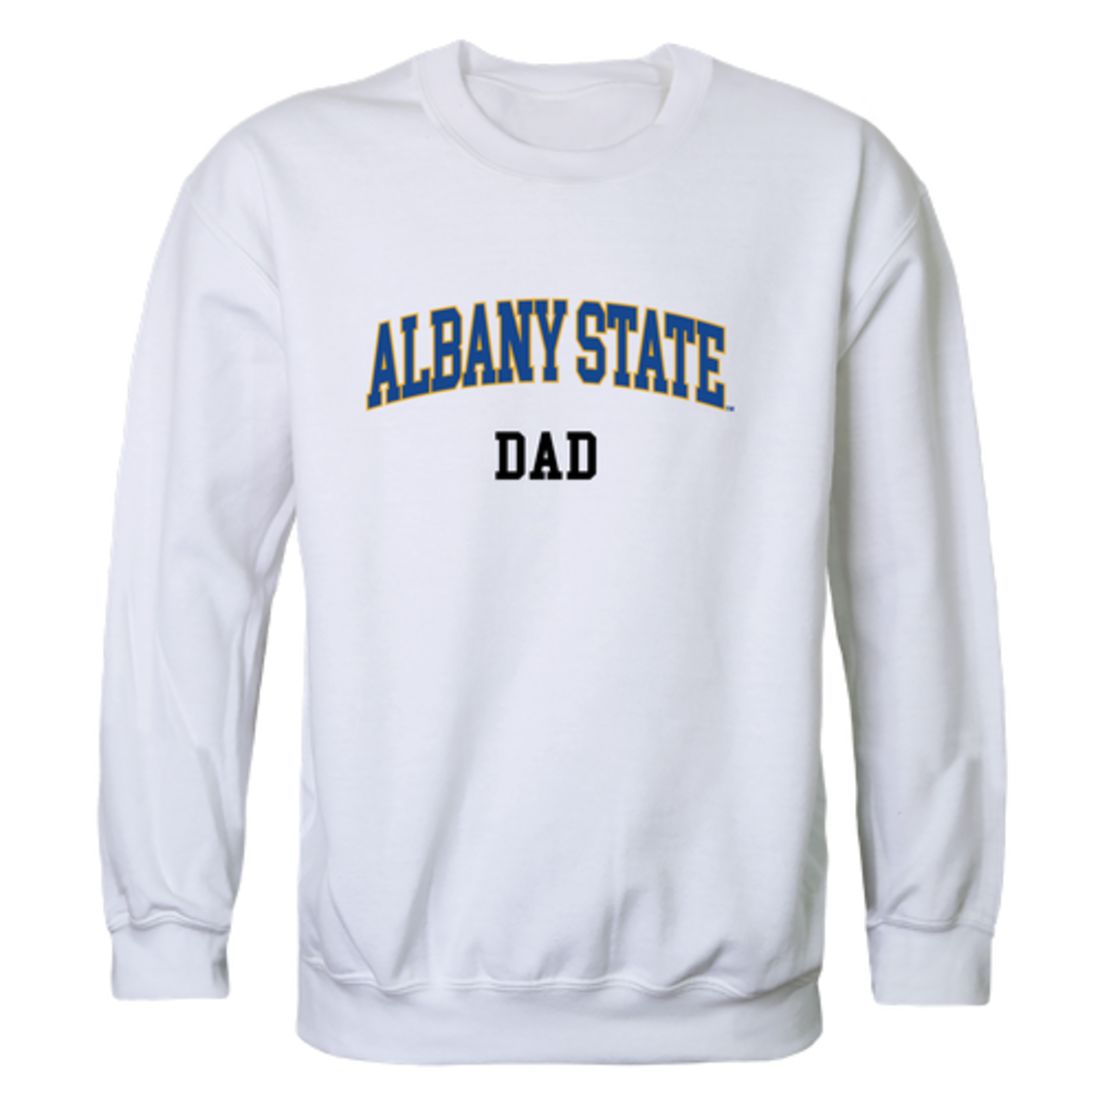 ASU Albany State University Golden Rams Dad Fleece Crewneck Pullover Sweatshirt Heather Grey-Campus-Wardrobe